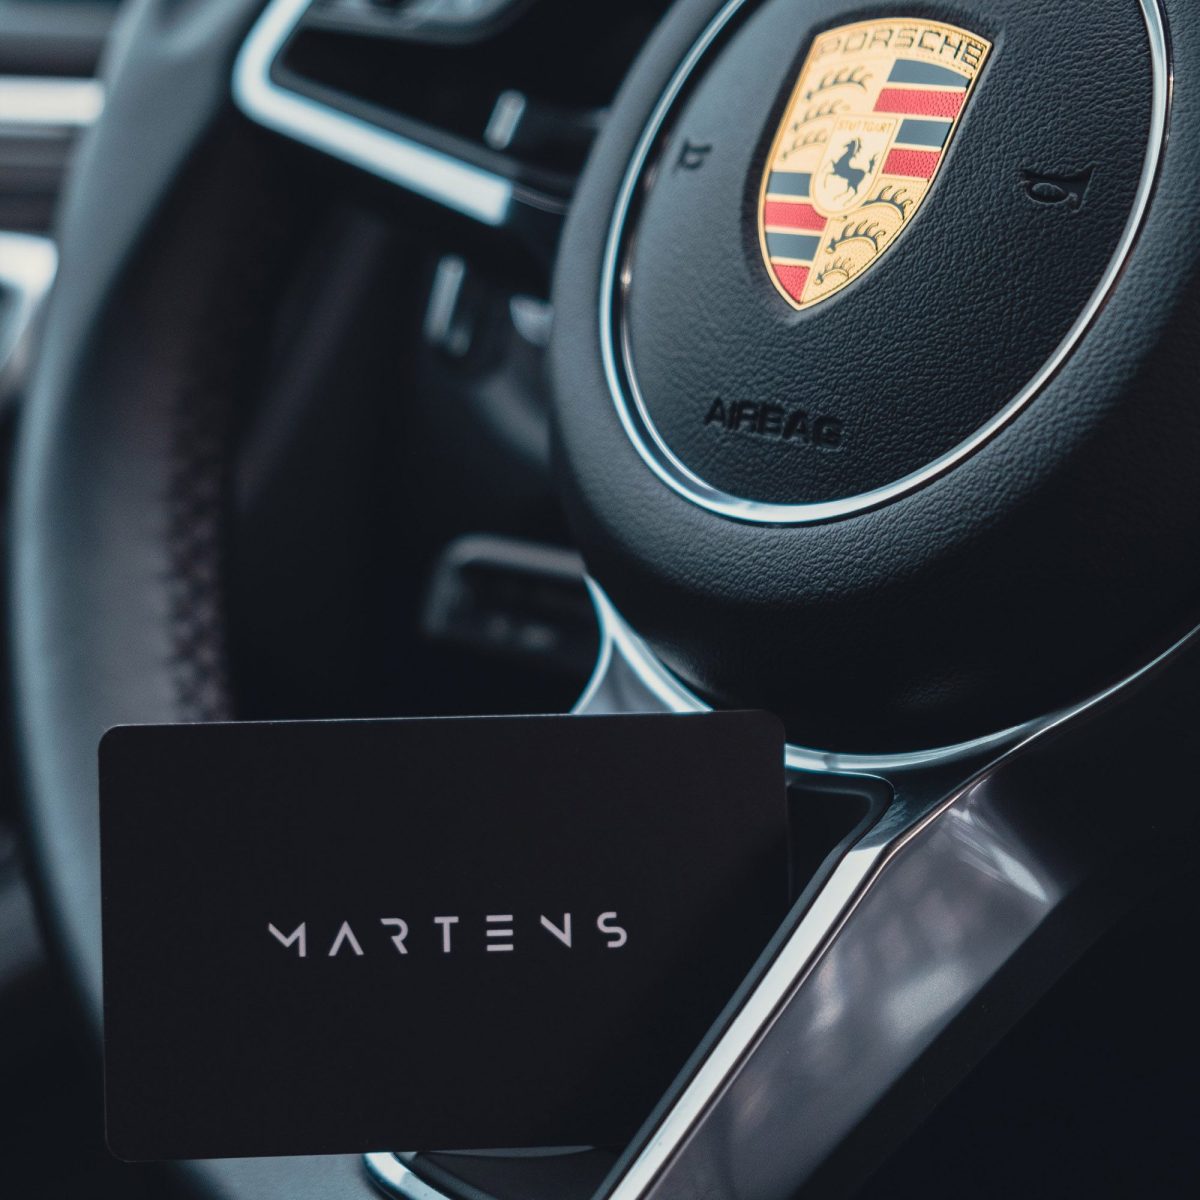 martens-card